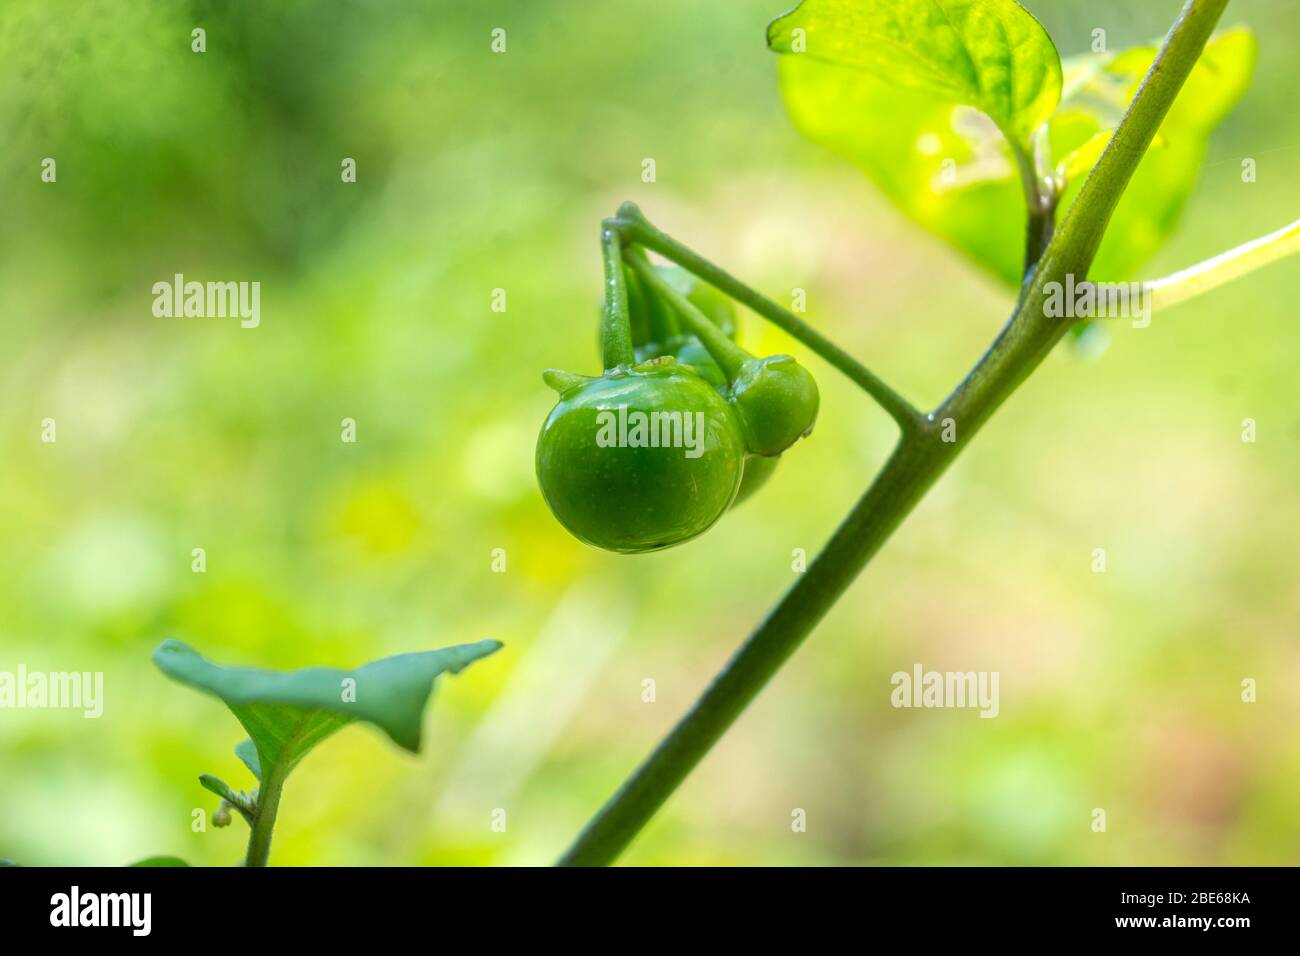 Leunca o Ranti ha il nome latino Solanum Nigrum L, ed è classificato nella famiglia Solanaceae (zucca). Le verdure Leunca sono piccole e rotonde verdi Foto Stock